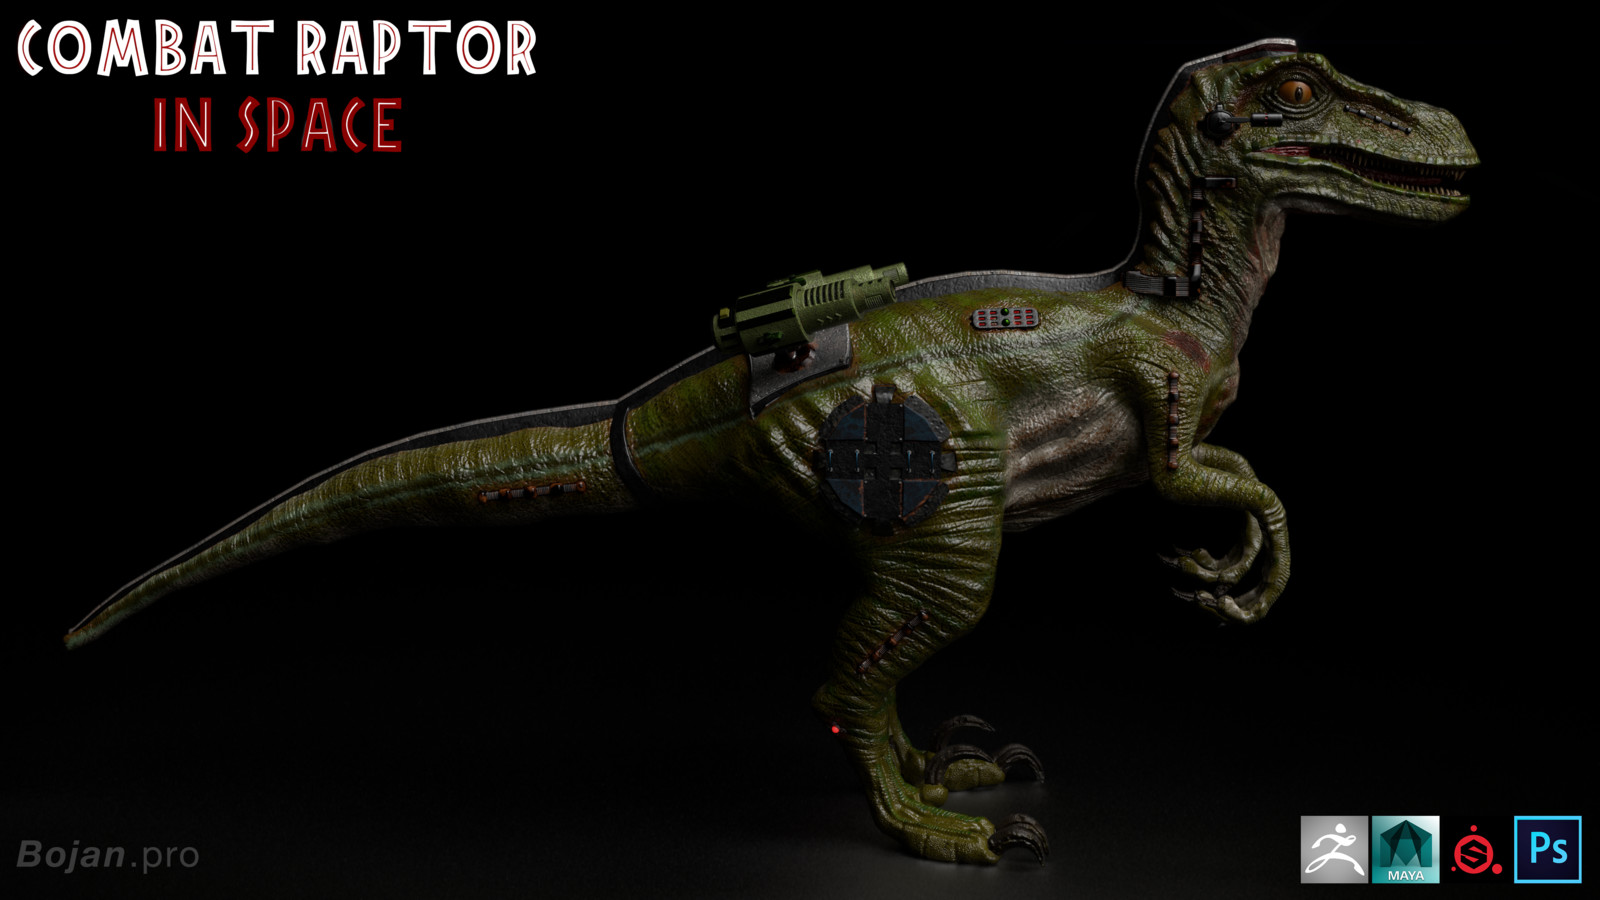 Combat Raptor